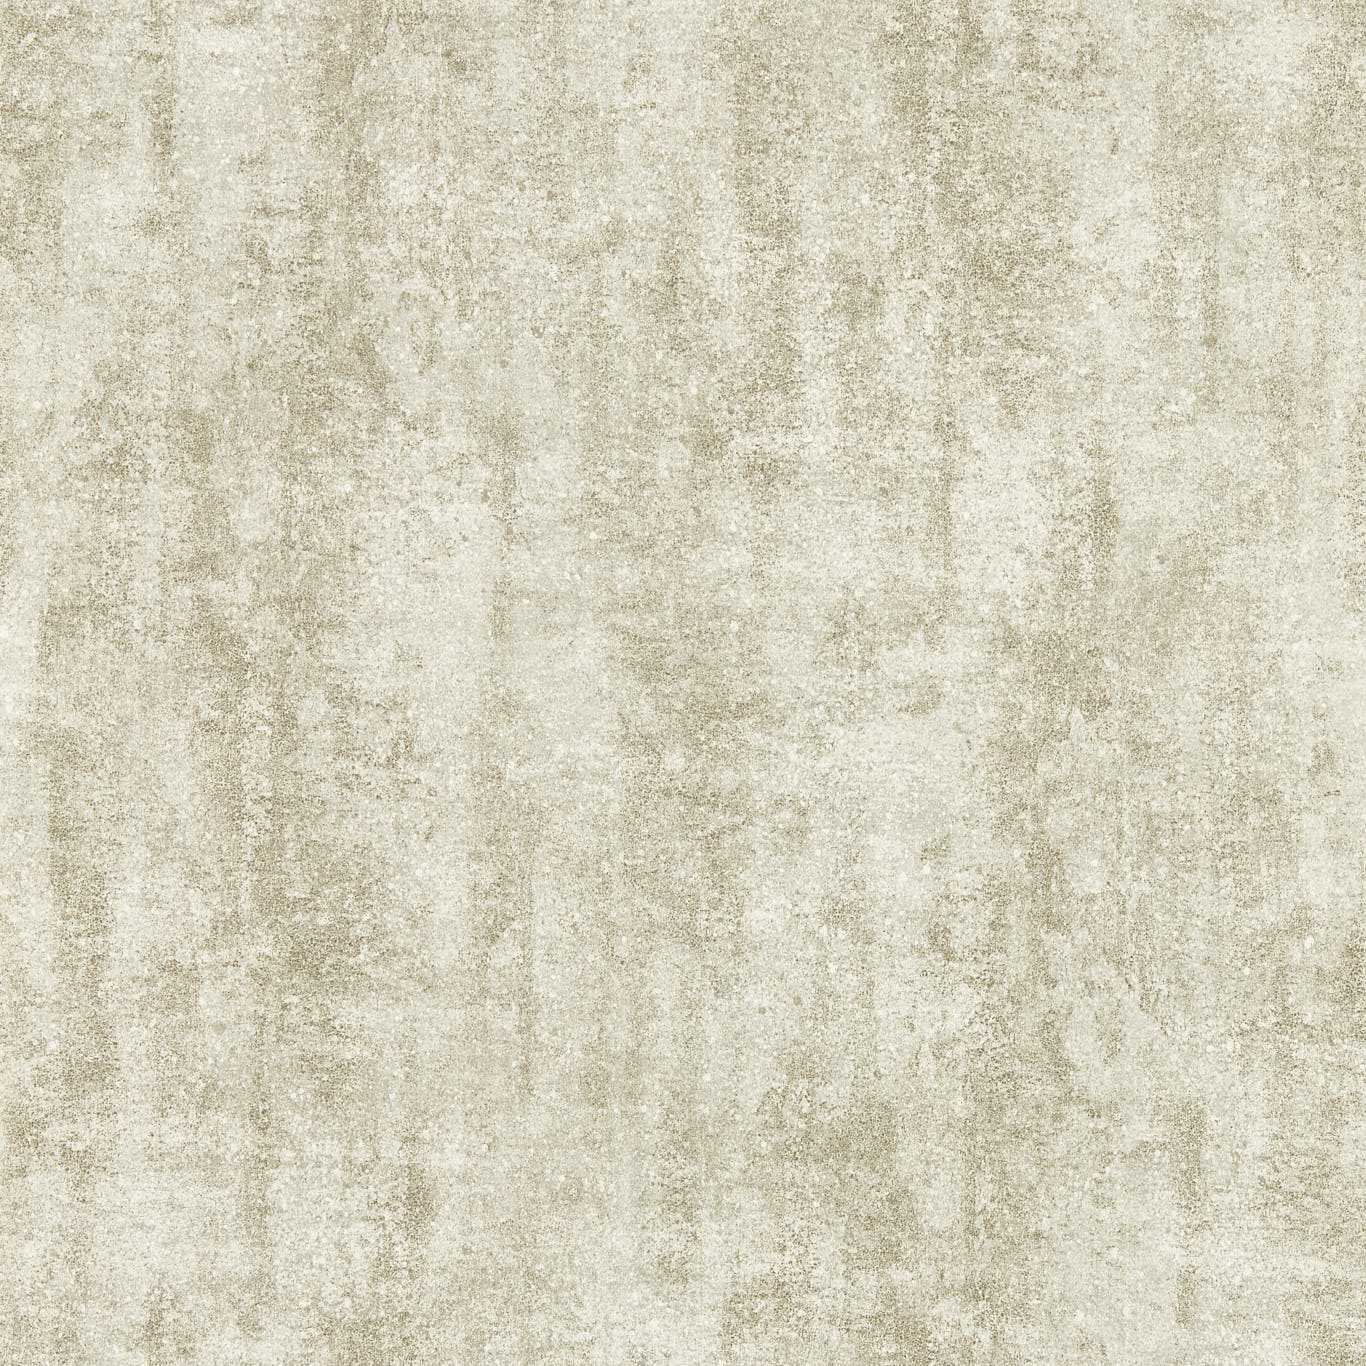 Sontuoso Pebble Wallpaper W0169/04 by Clarke & Clarke